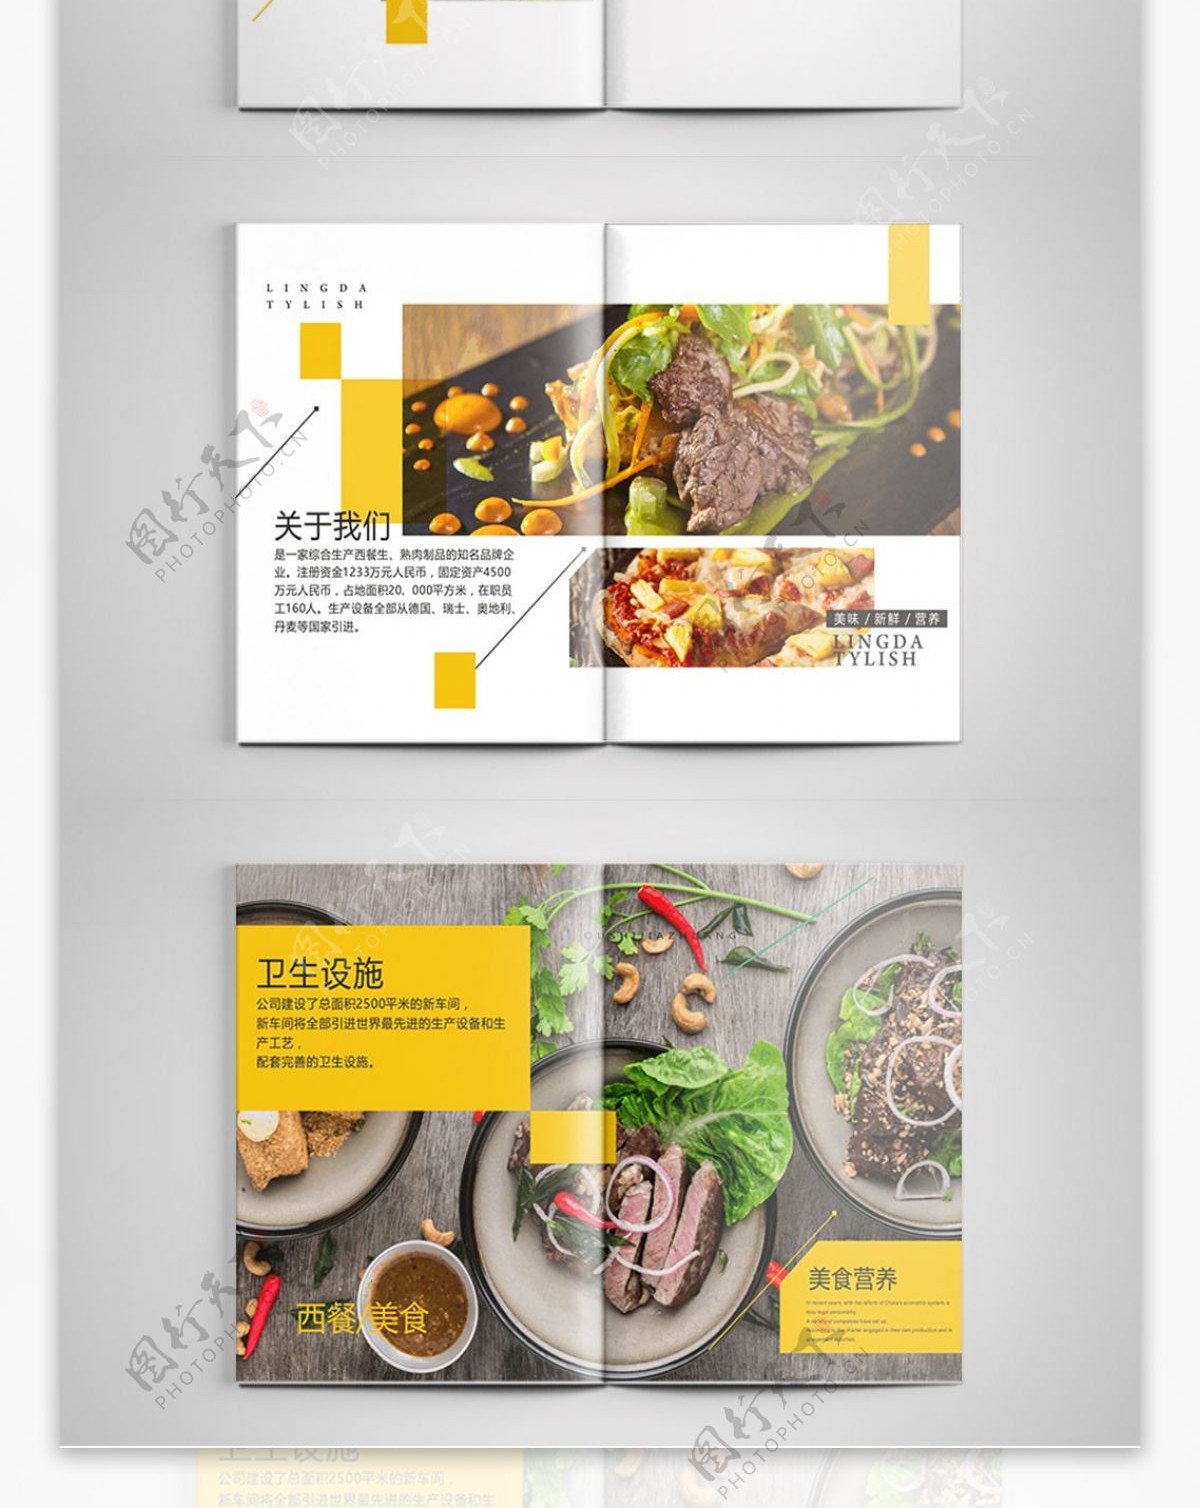 极简创意版式西餐美食餐饮画册